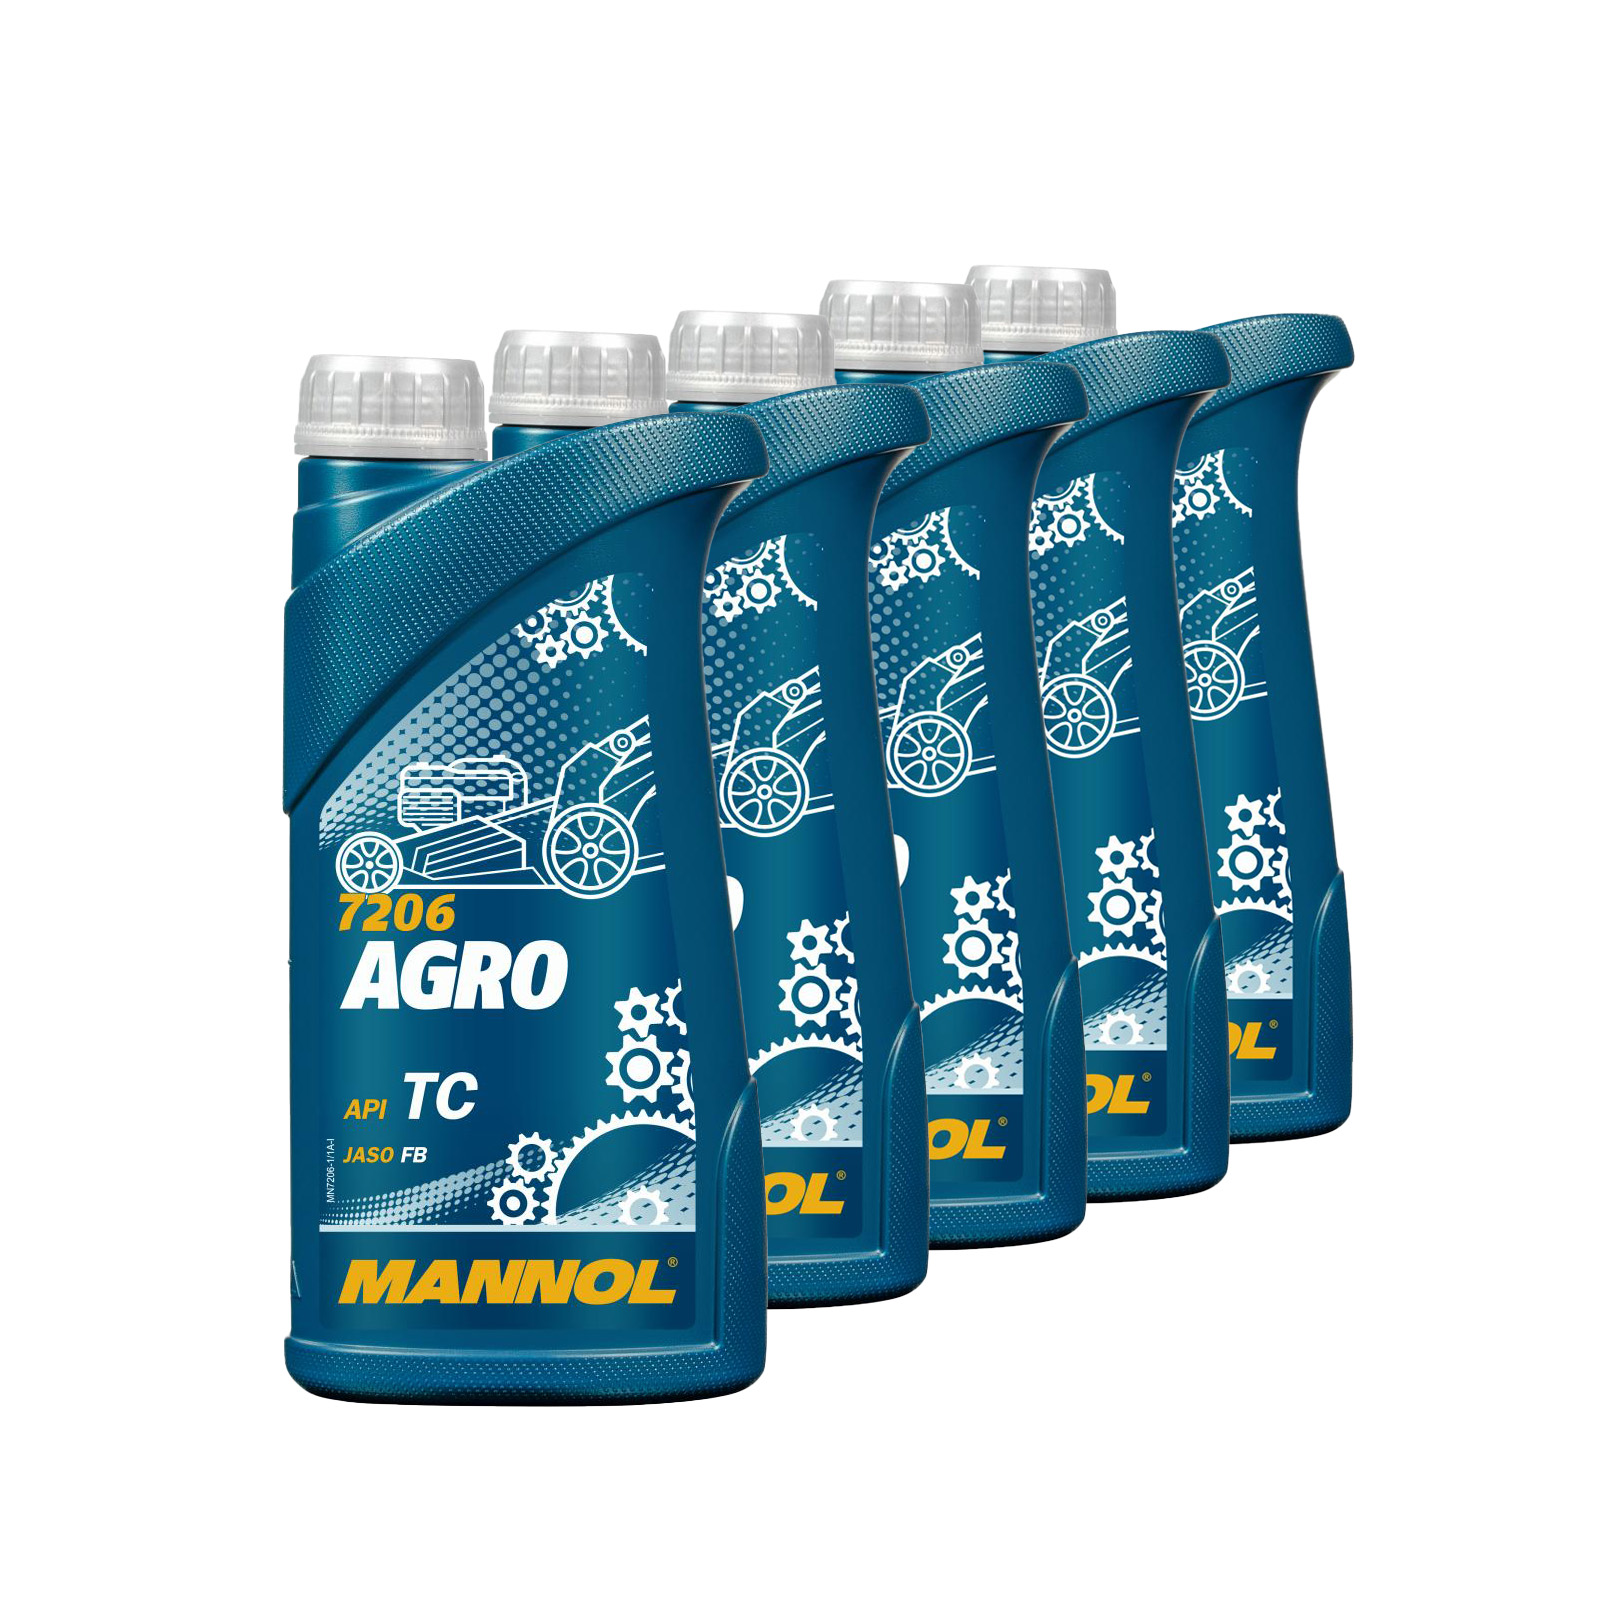 5 Liter (5x1) MANNOL Agro API TC Öl für Gartengeräte Öl für Gartengeräte